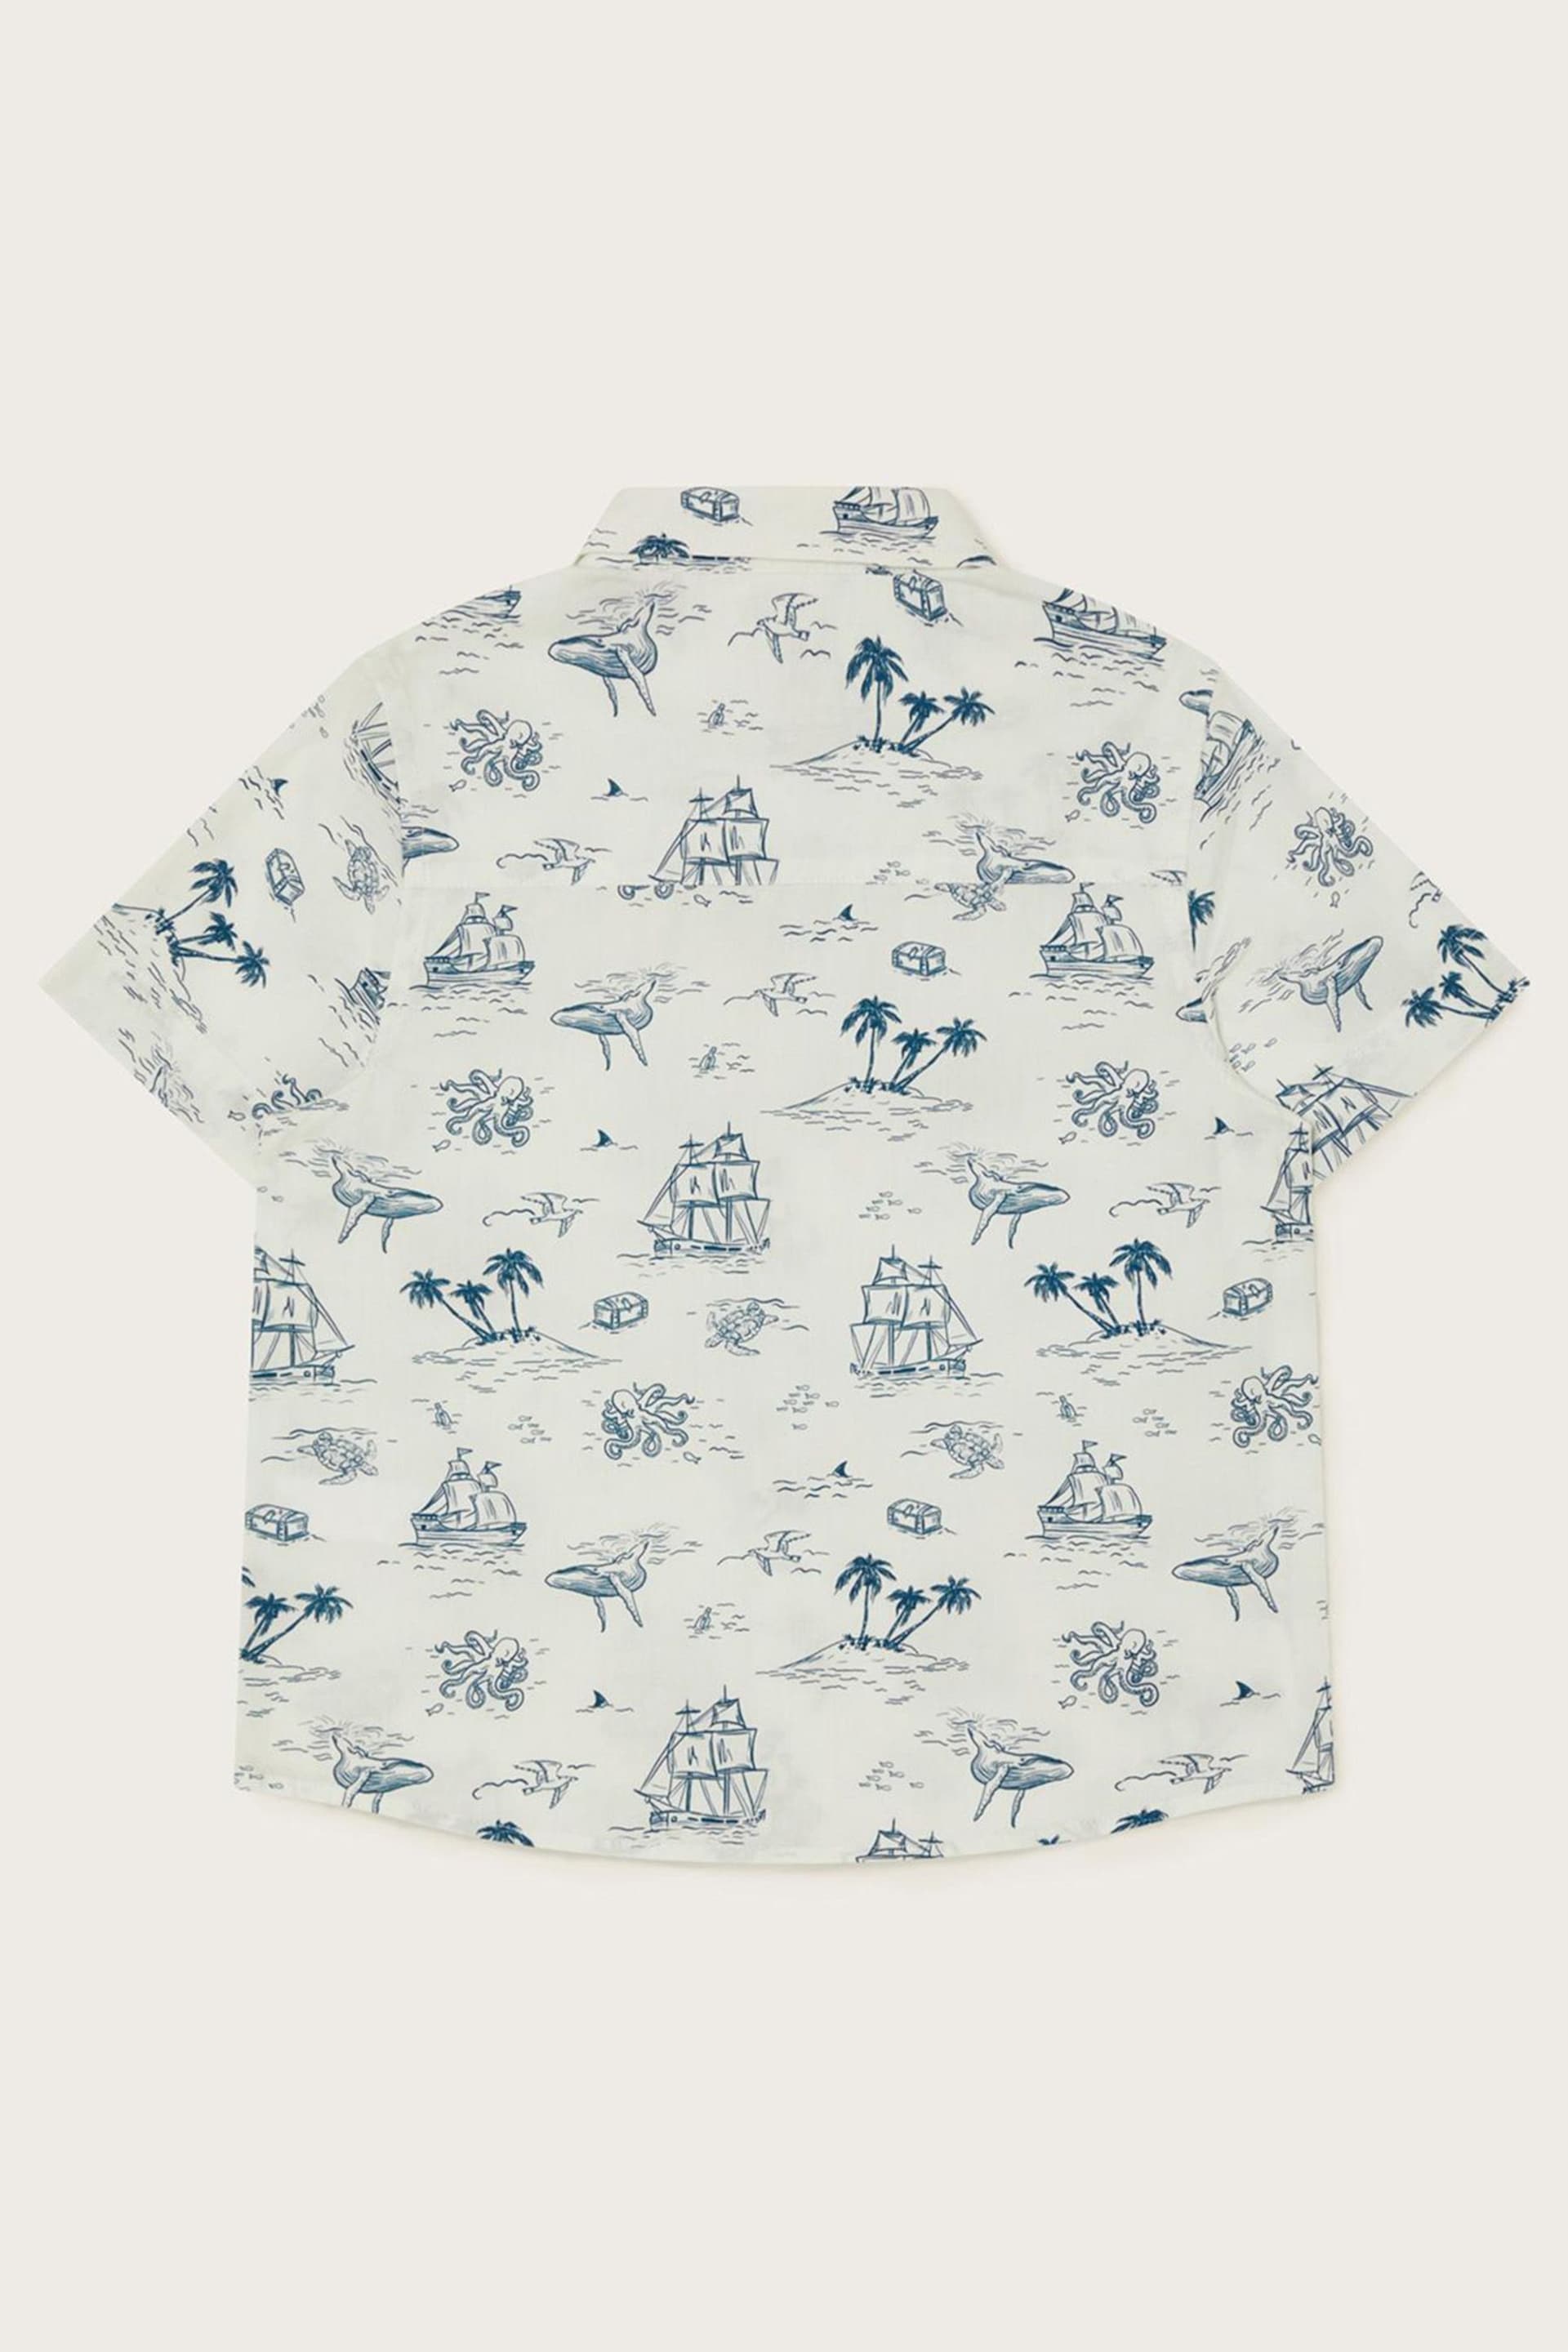 Monsoon White Boat Shirt - Image 2 of 3